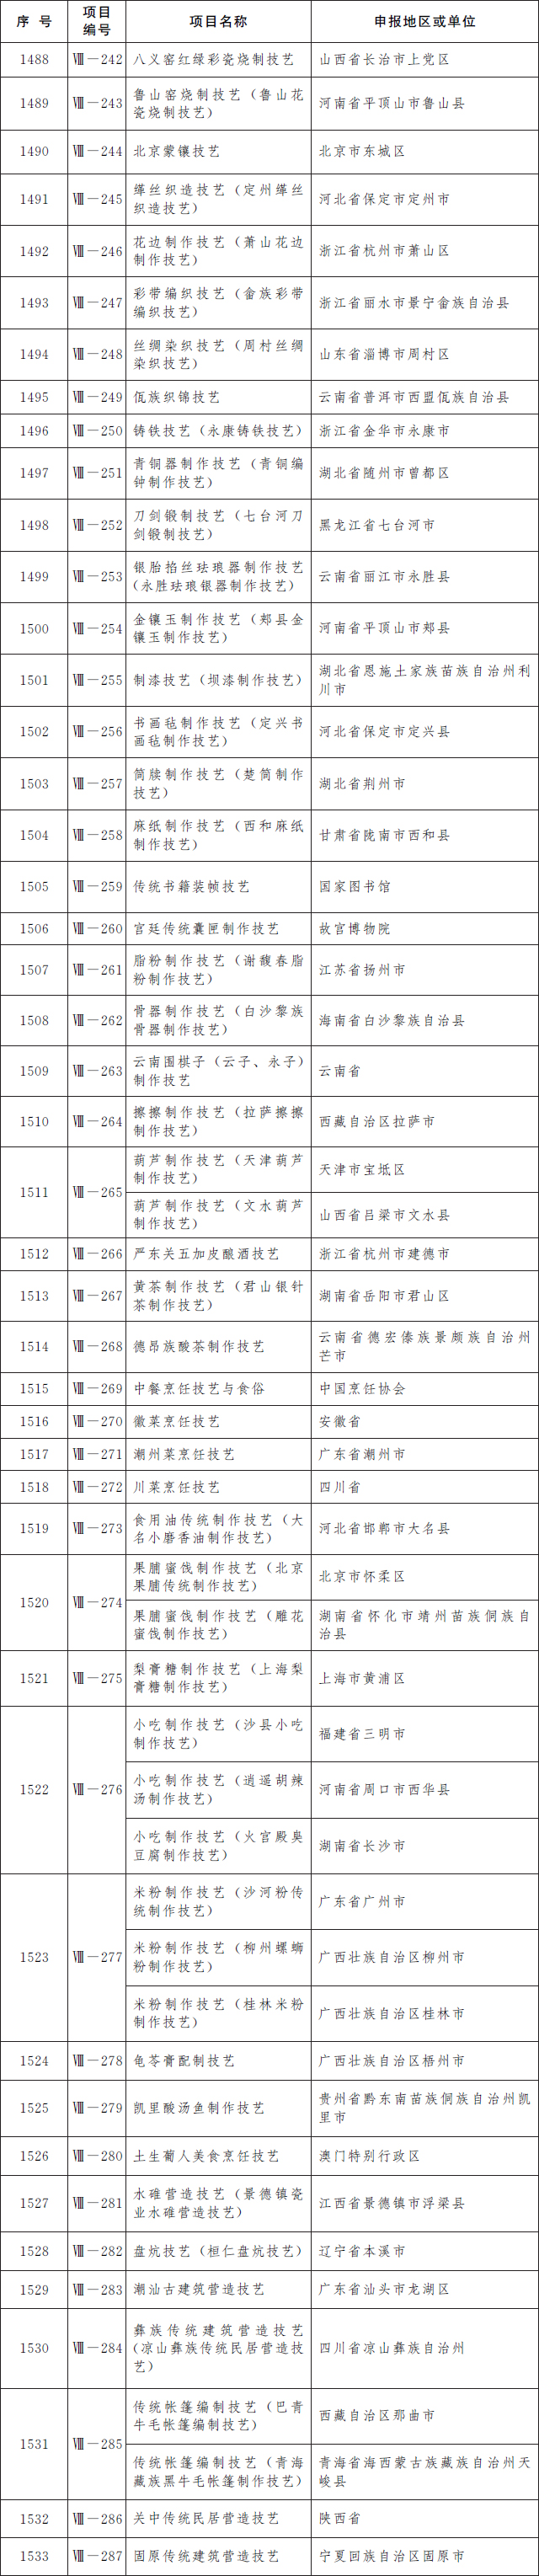 福清佾舞上榜第五批国家级非遗名录